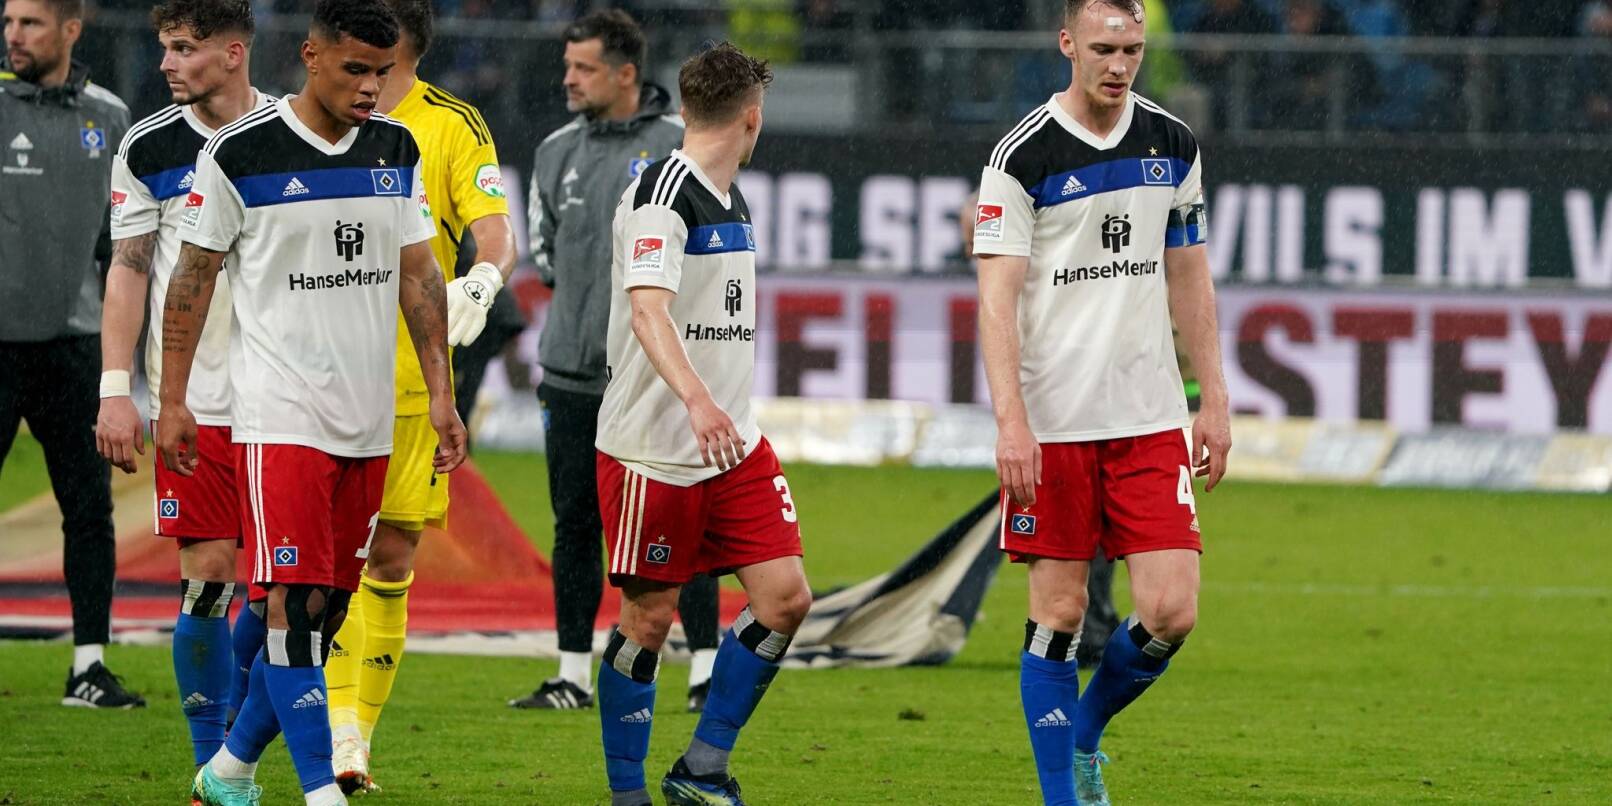 Betrübte Stimmung nach der Punkteteilung: Die Hamburger Spieler um Sebastian Schonlau (r) gehen nach dem Spiel zu den Fans.